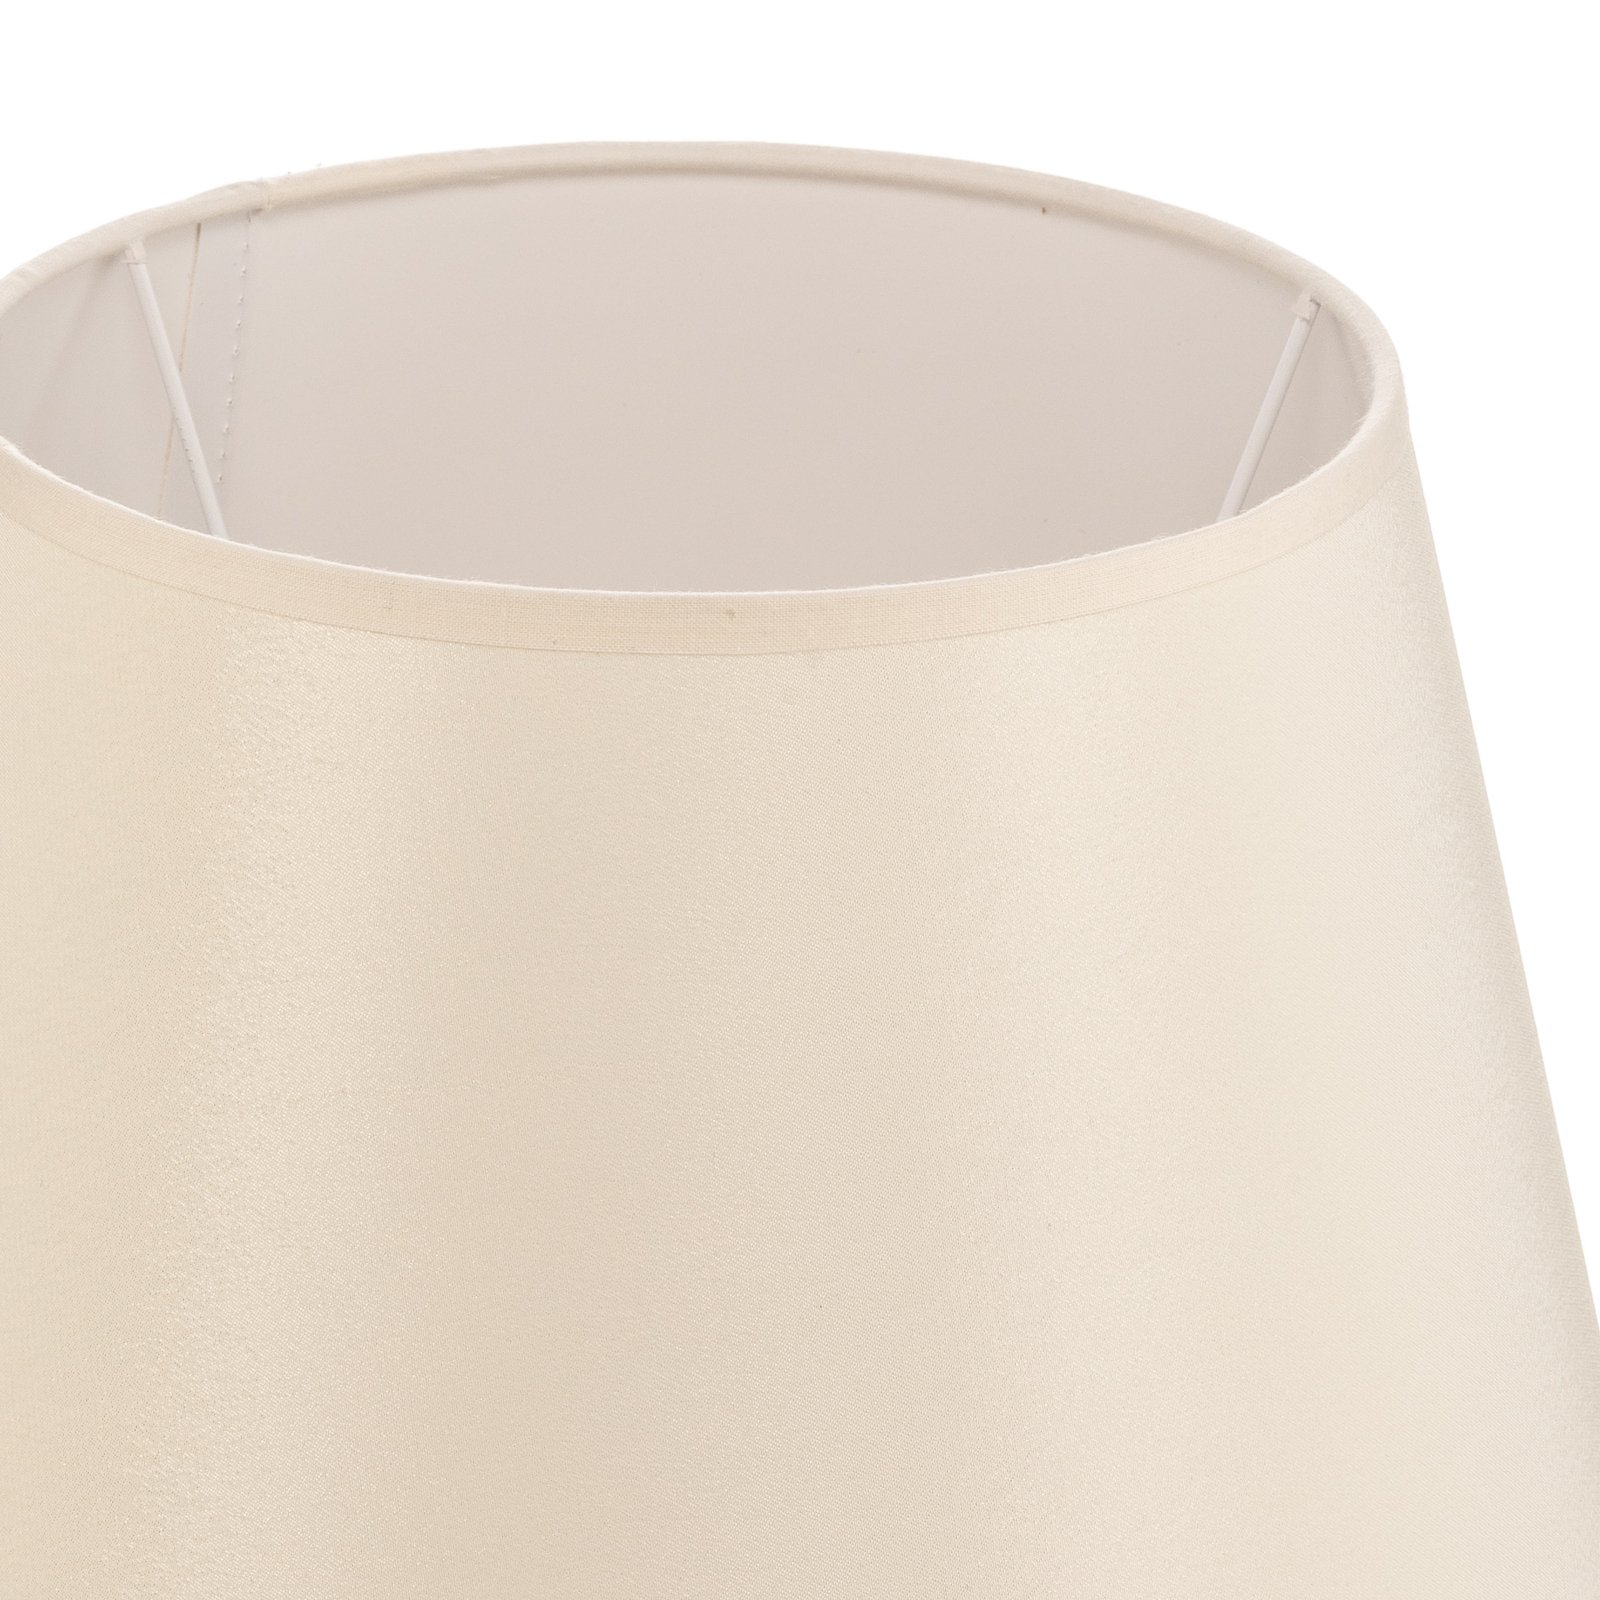 Cone lampshade height 18 cm, ecru/white chintz